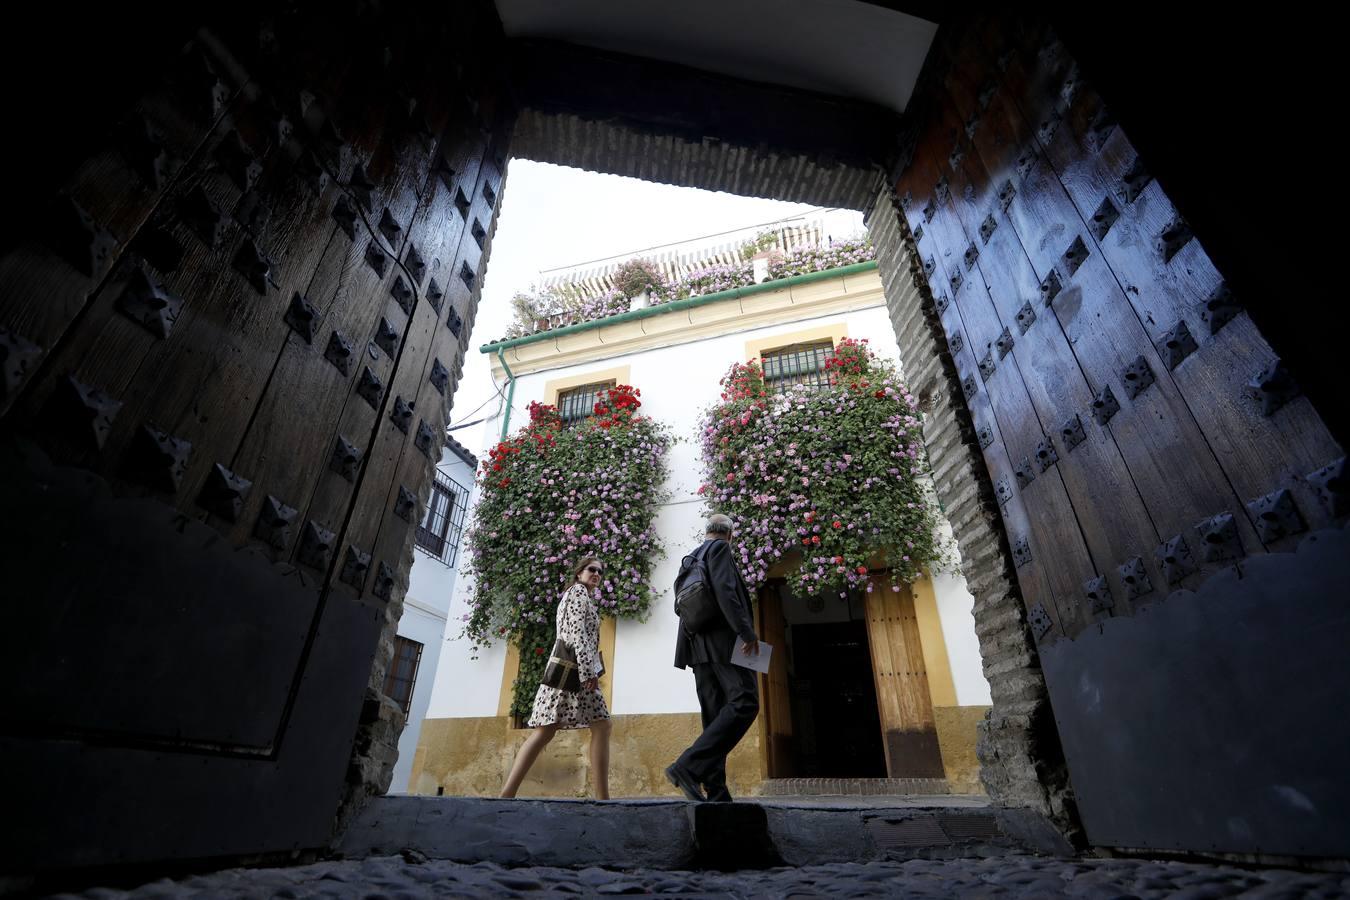 Patios de Córdoba 2019 | Balcones y rejas, los escudos de colores de casas que no cierran